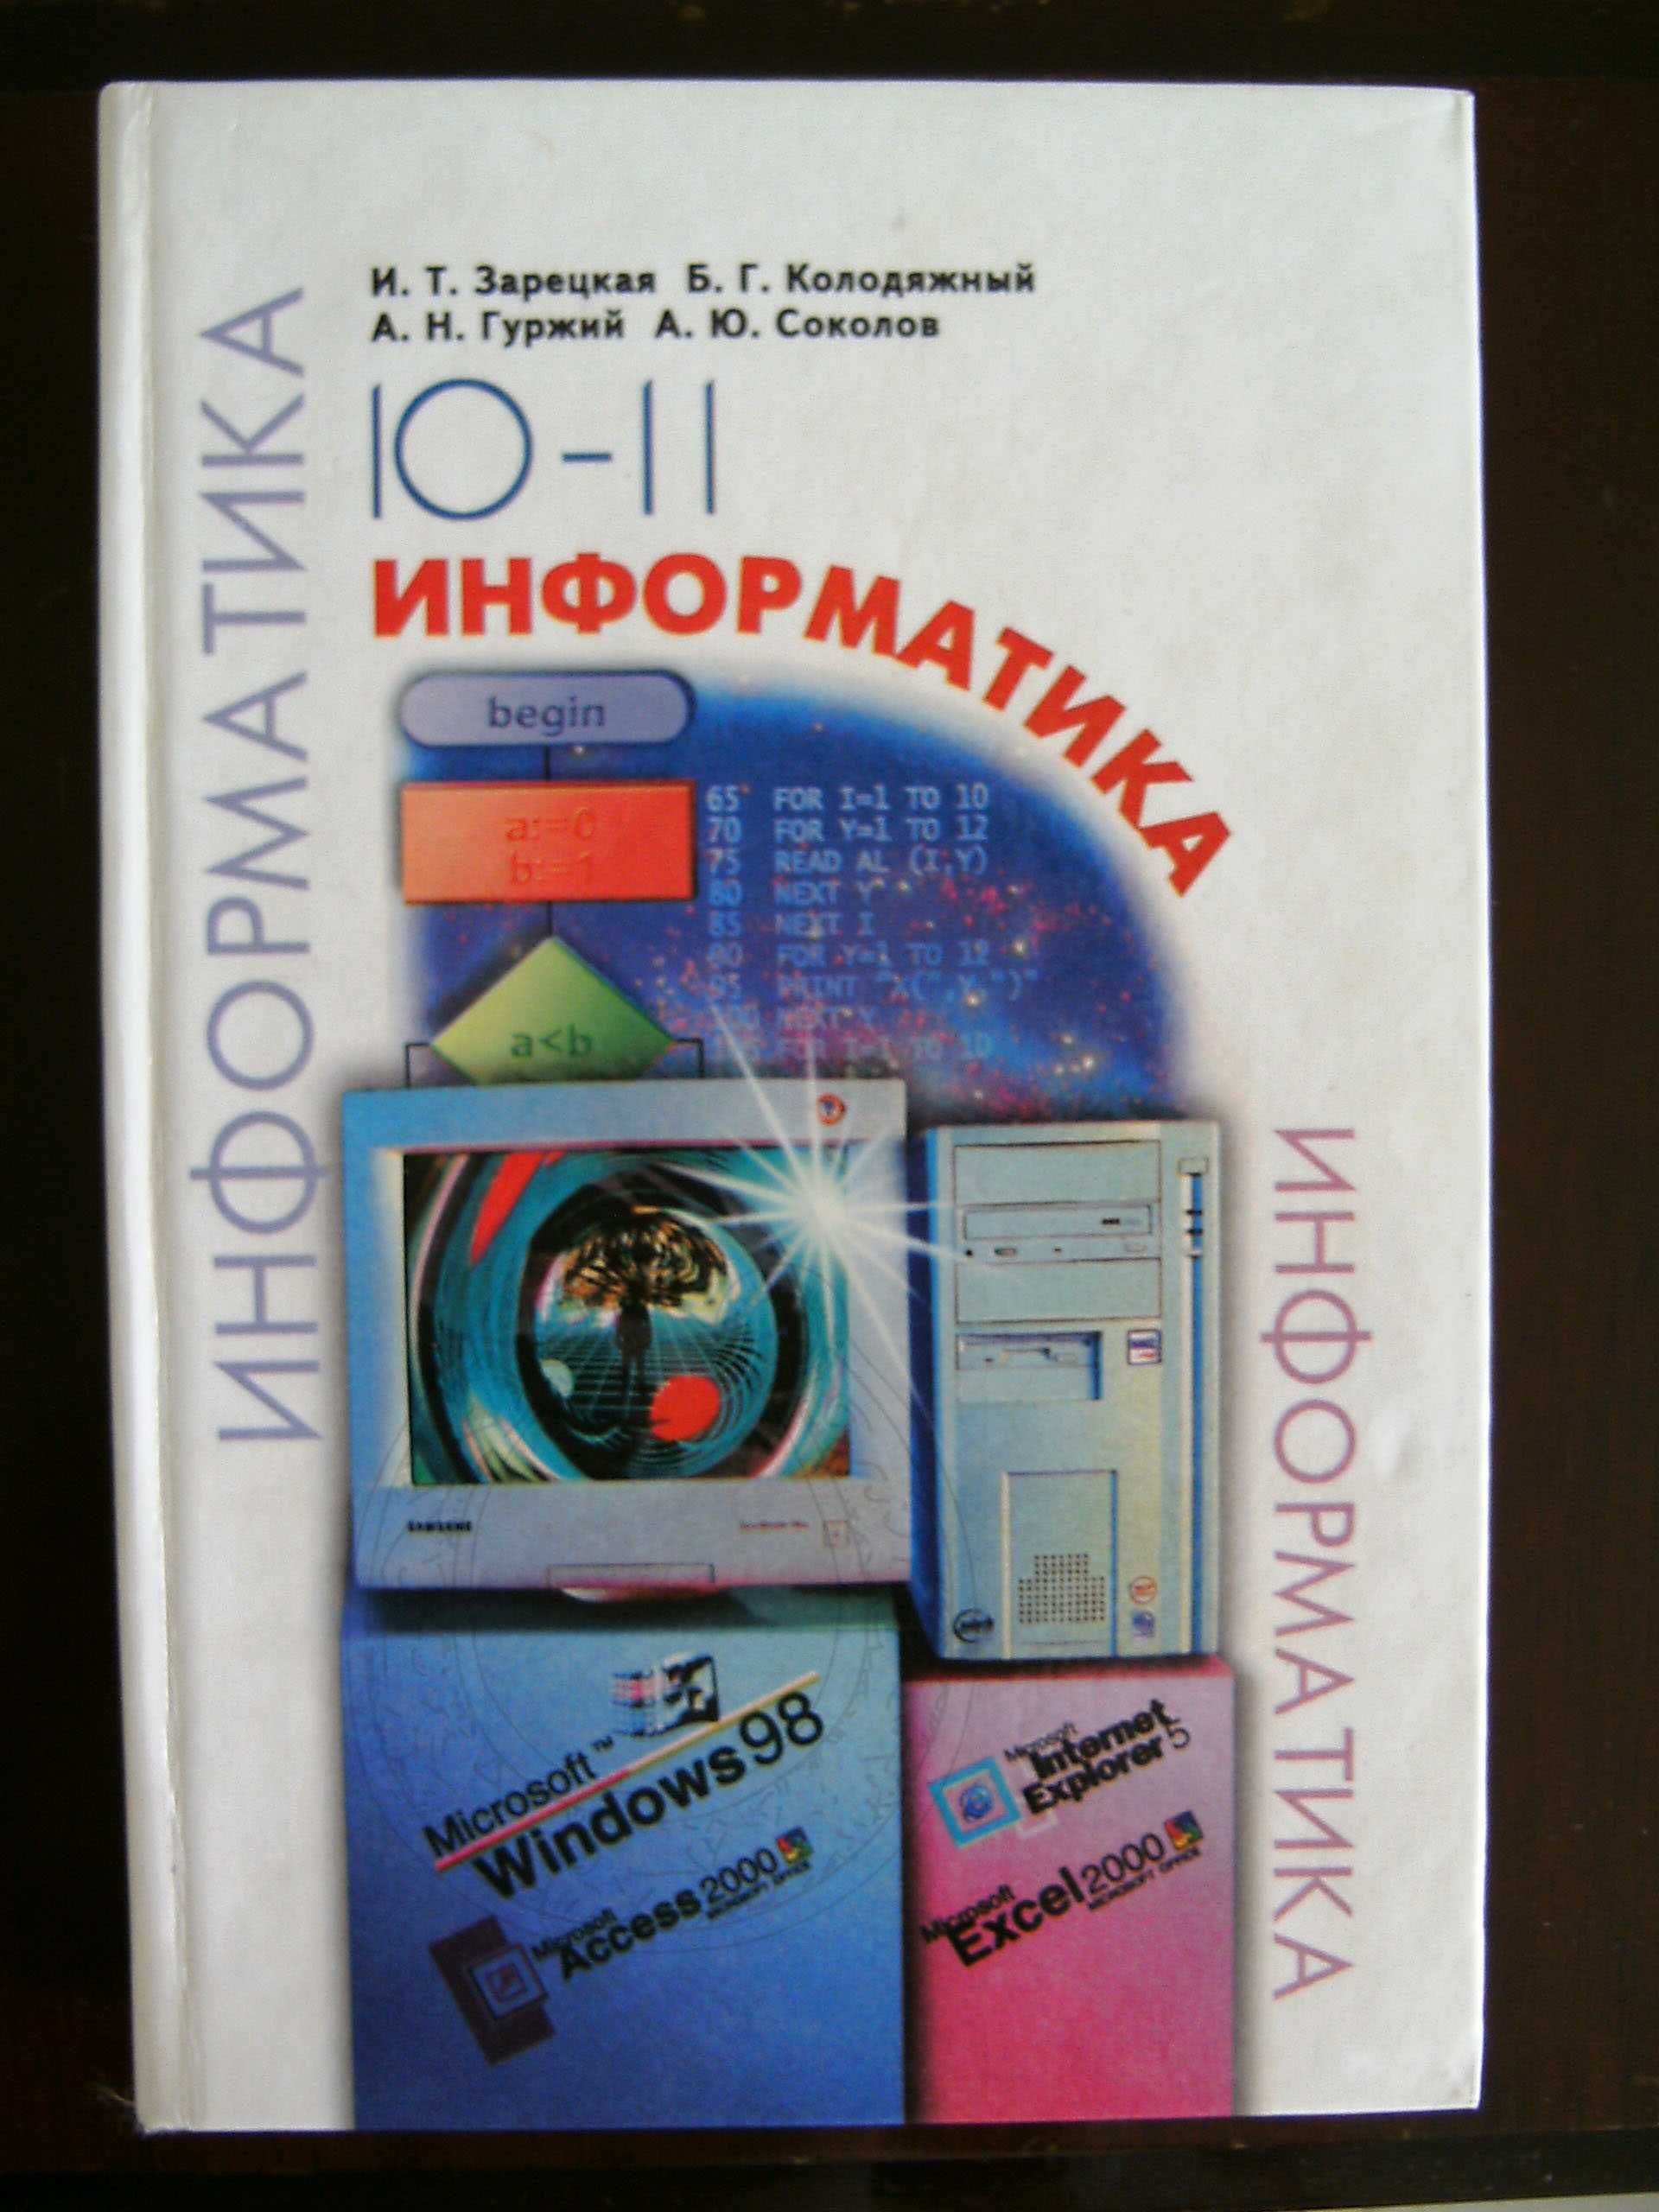 Зарецкая, Колодяжный и др. Информатика 10-11. Учебник.